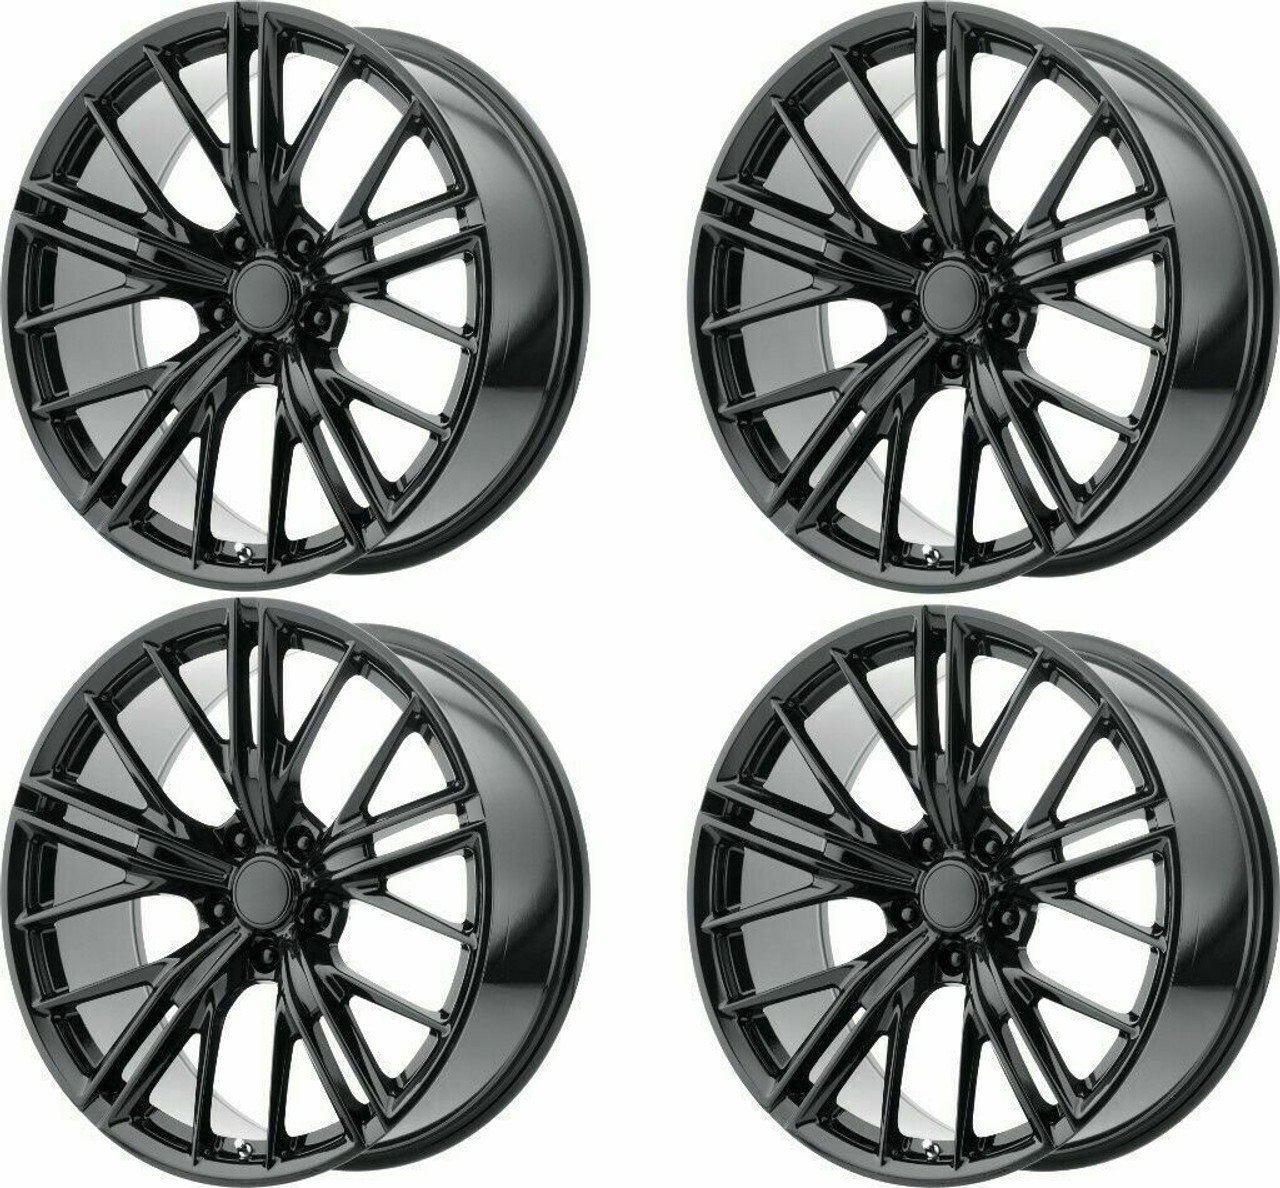 Set 4 Performance Replicas PR194 20x10 5x120 Gloss Black Wheels 20" 23mm Rims